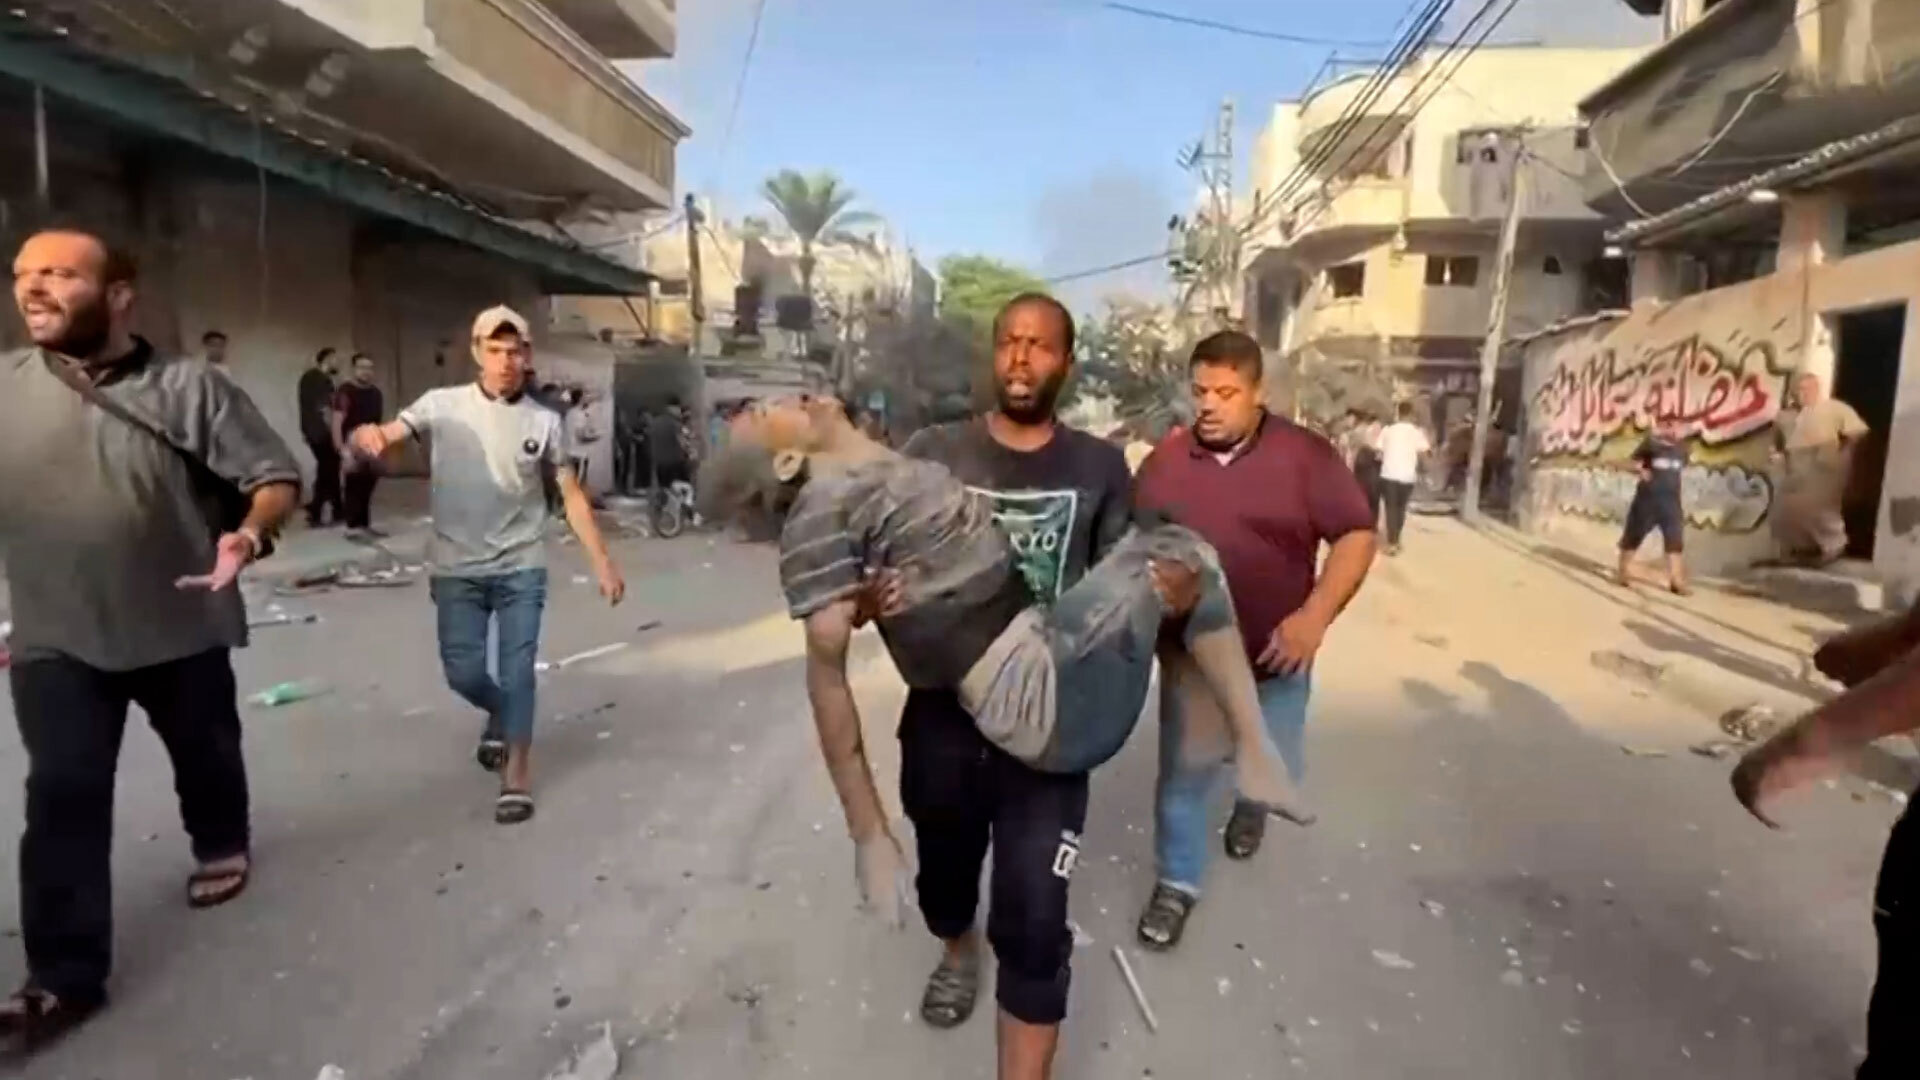 Condamnation internationale du bombardement terrifiant sur Gaza et accusations égyptiennes contre Israël